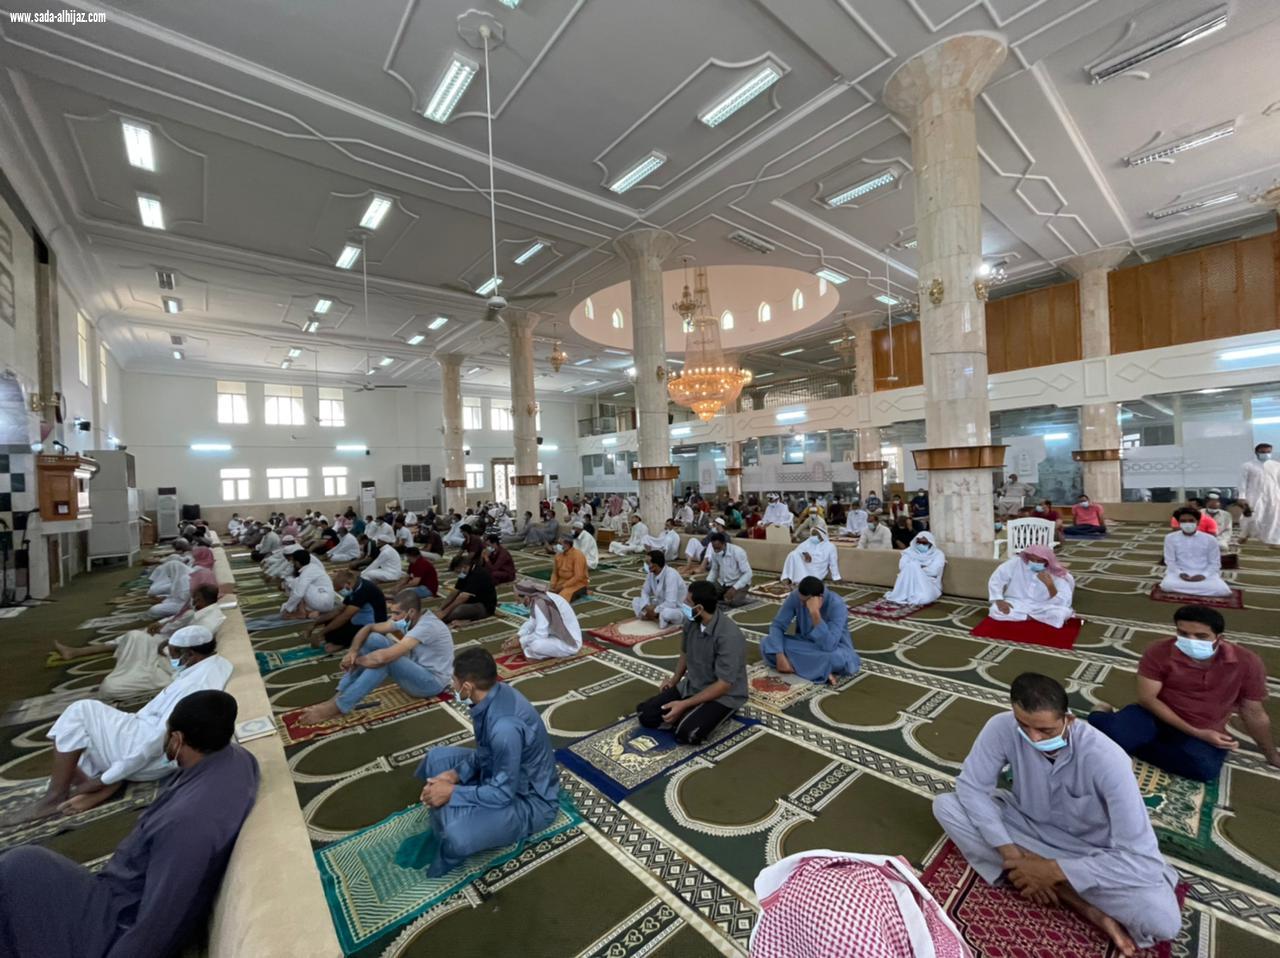 مواصلة تطبيق الإجراءات الاحترازية من قبل مستشفى صامطة وإدارة المساجد في المحافظة